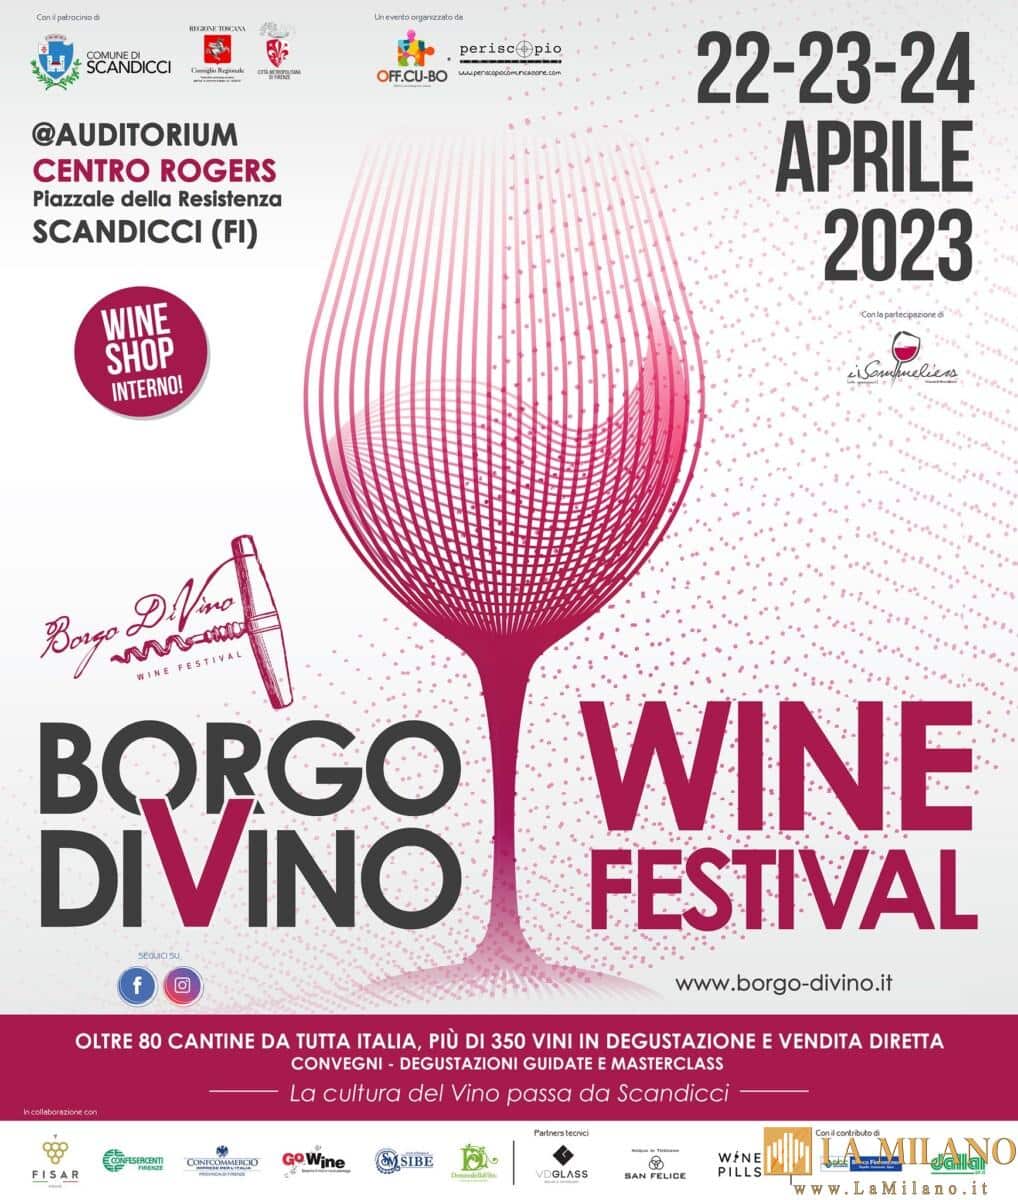 Borgo DiVino torna a Scandicci nel nome della “cultura del vino”